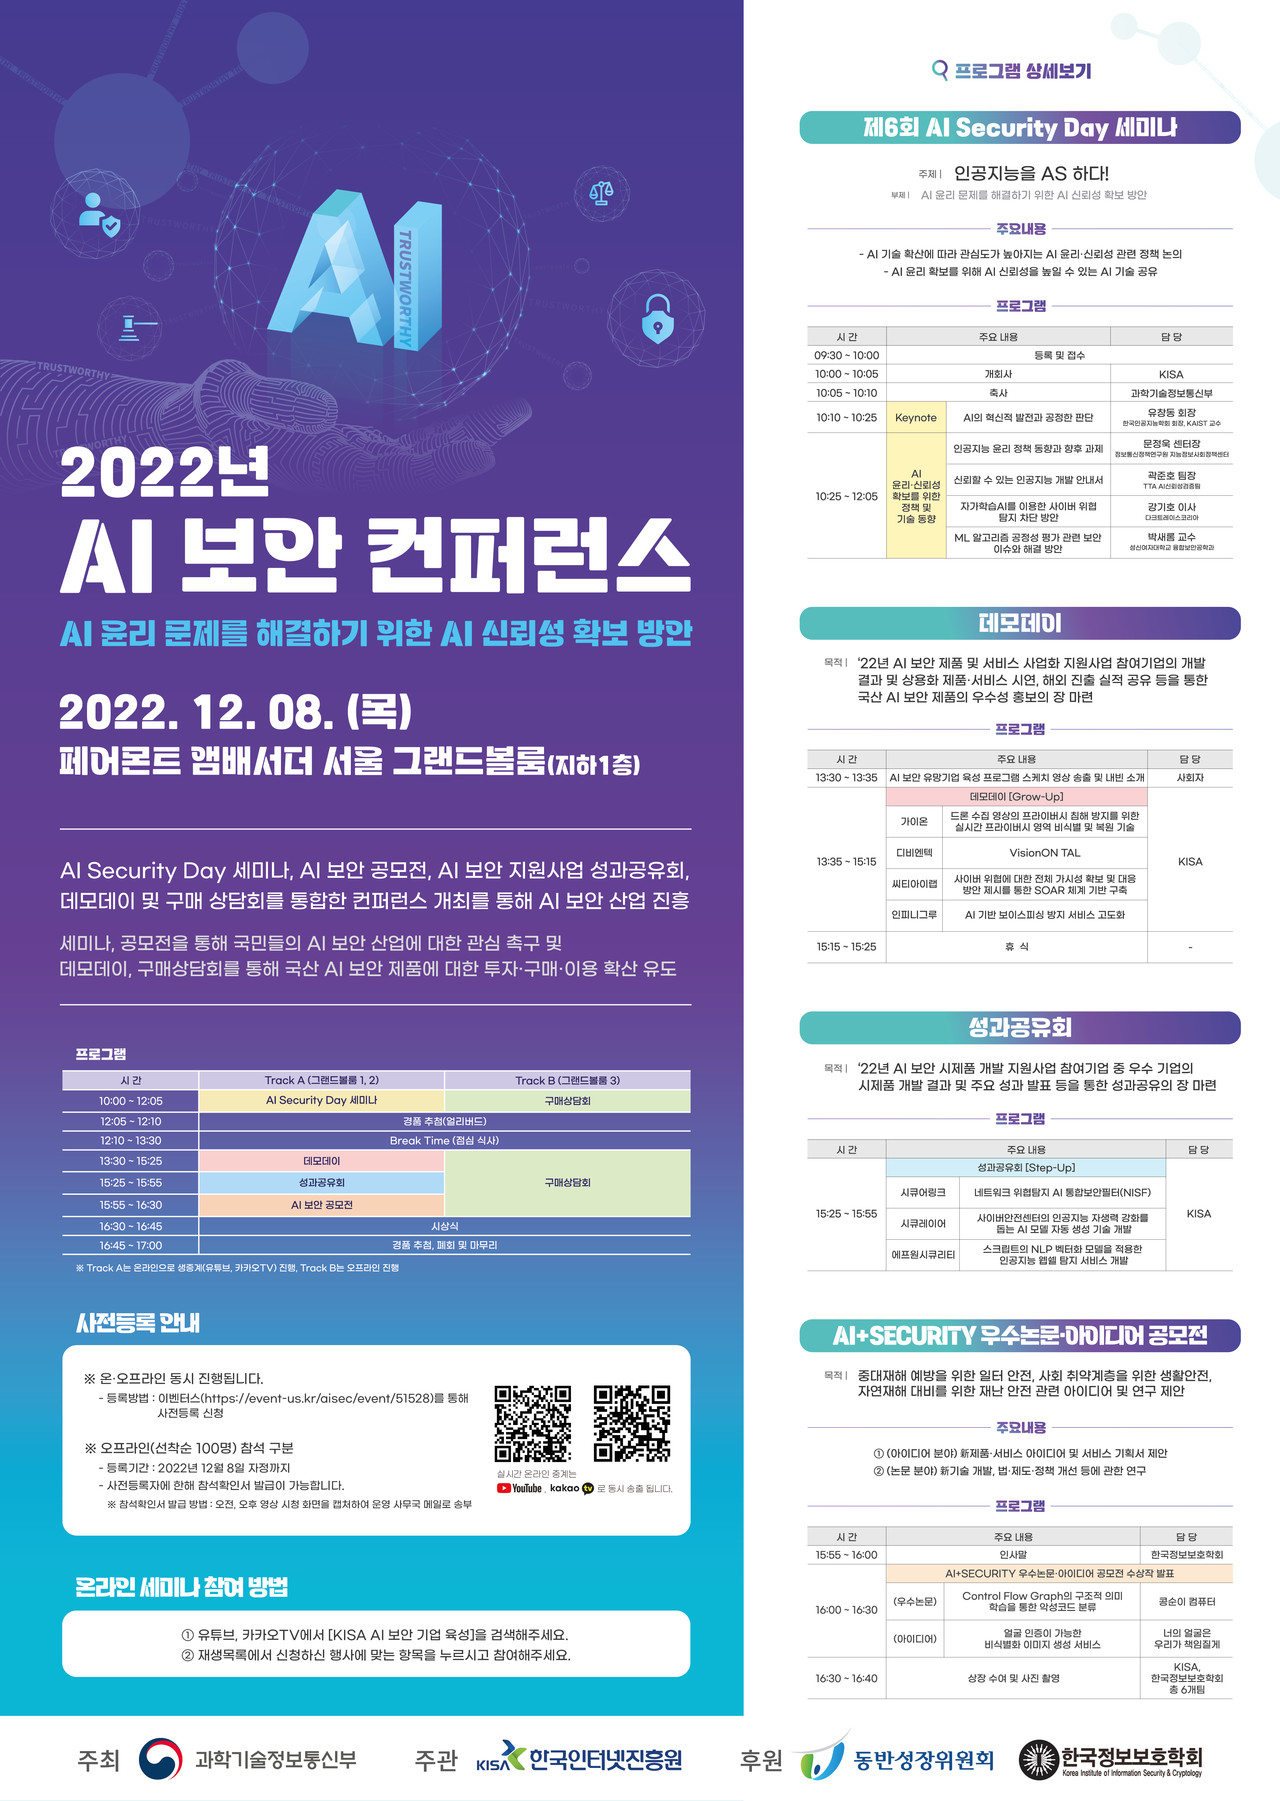 221207-KISA-참고이미지(2022년 AI 보안 컨퍼런스 포스터)